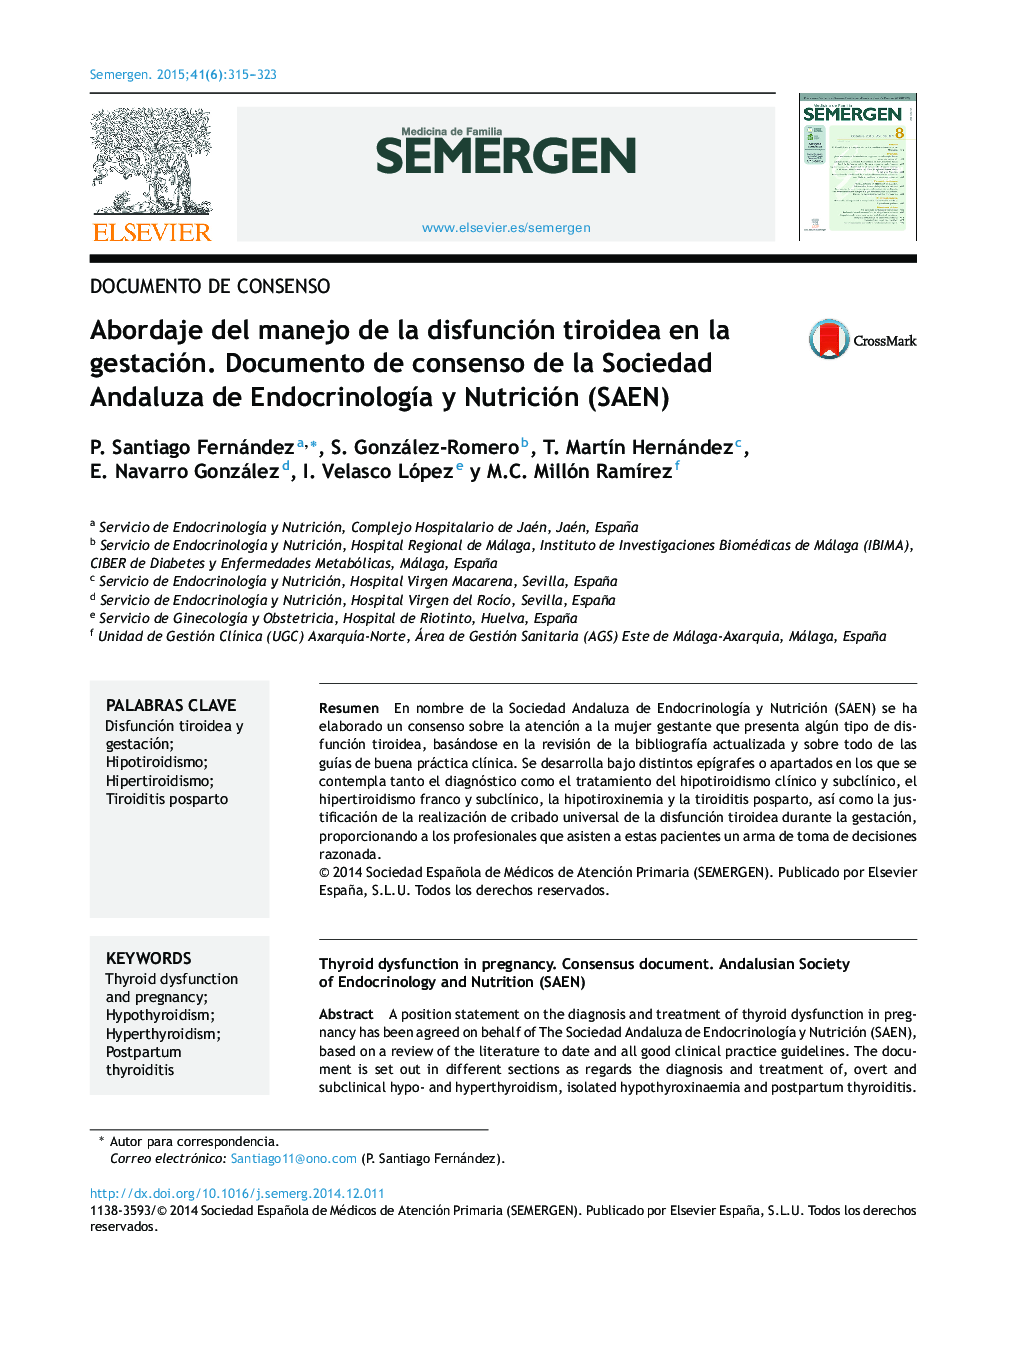 Abordaje del manejo de la disfunción tiroidea en la gestación. Documento de consenso de la Sociedad Andaluza de Endocrinología y Nutrición (SAEN)